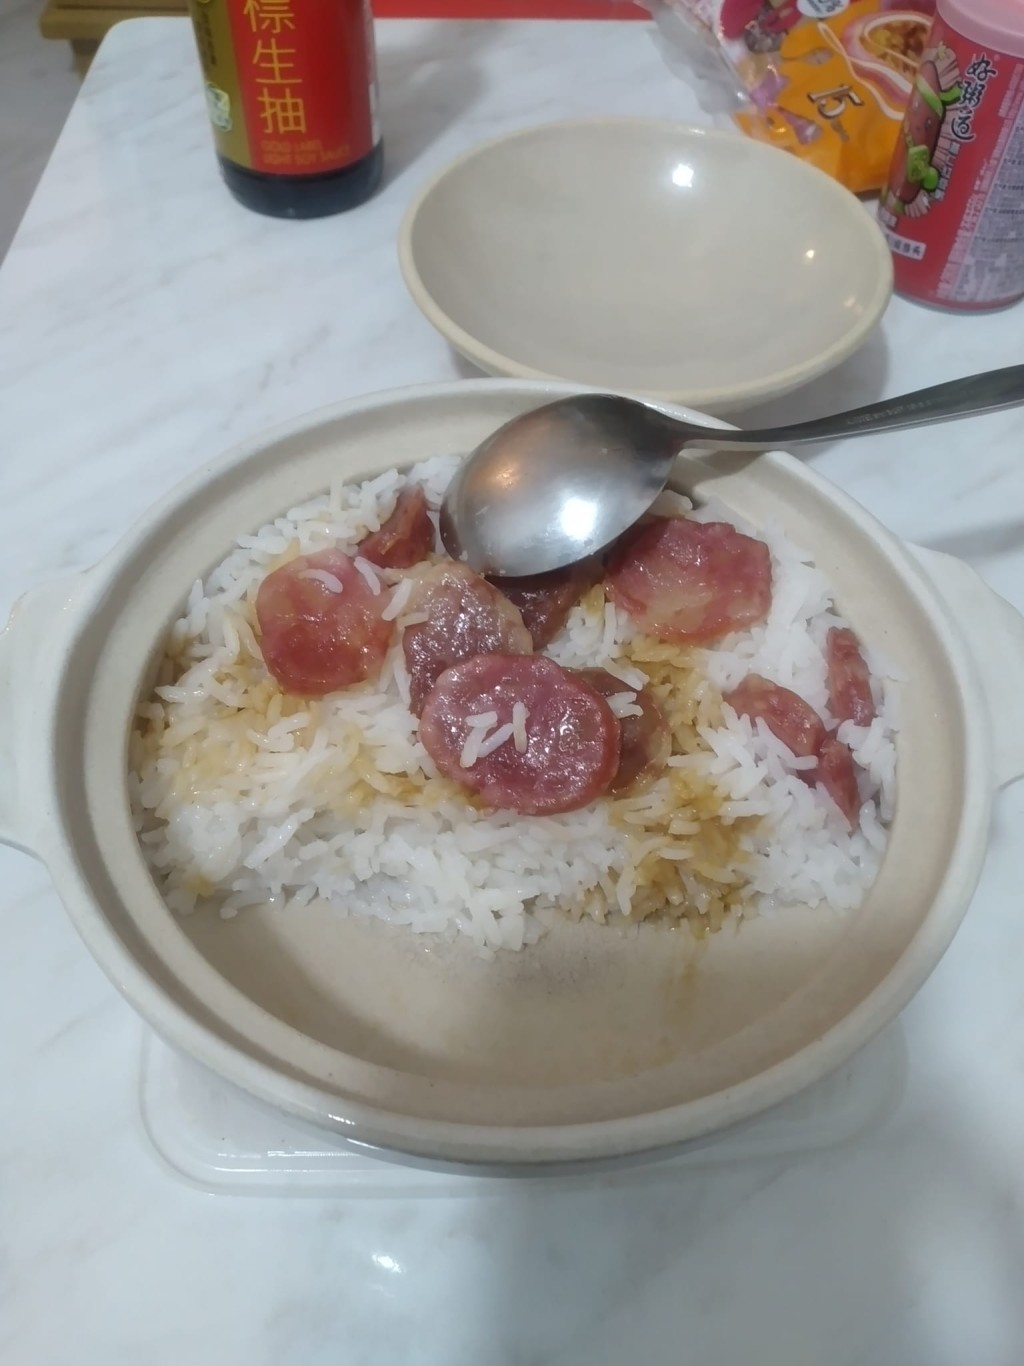 臘腸煲仔飯沒有燒焦底（圖片來源：Facebook@香港茶餐廳及美食關注組）